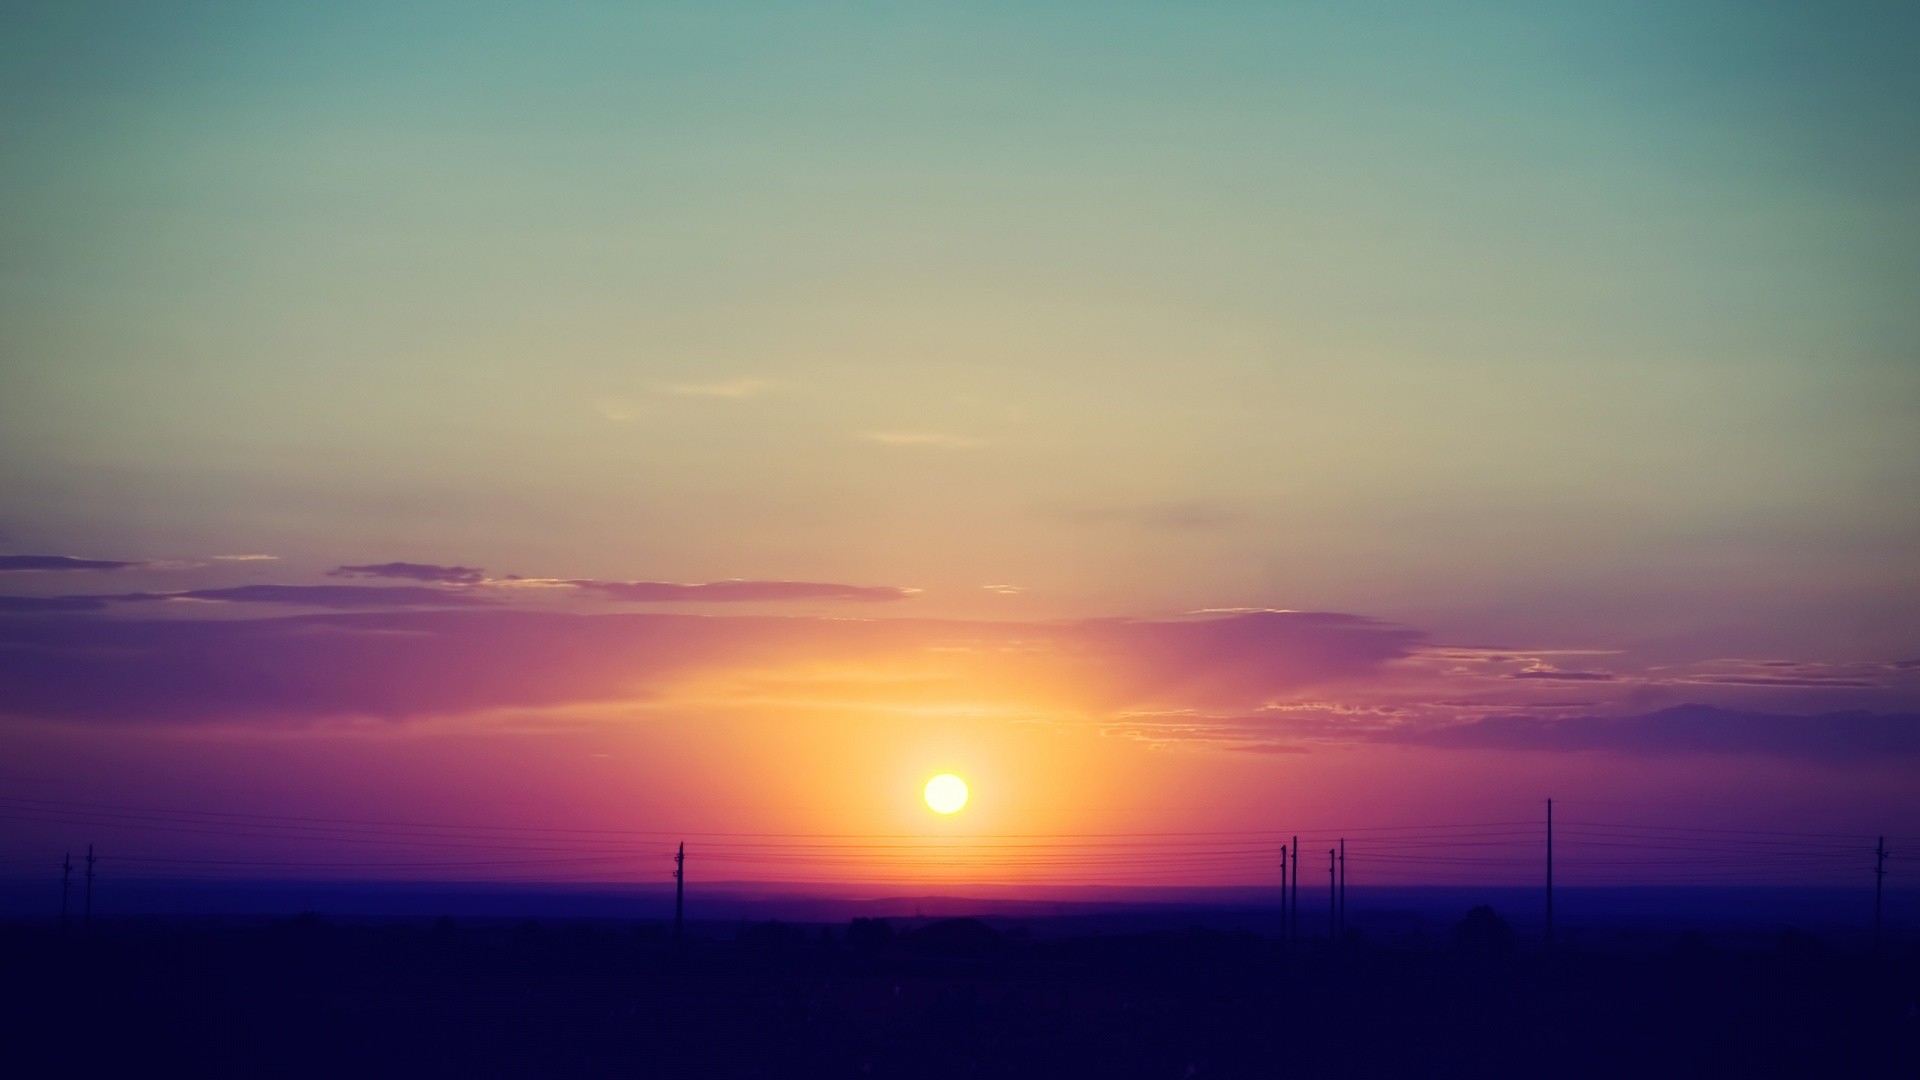 Colorful Beautiful Sunset Image 1920x1080